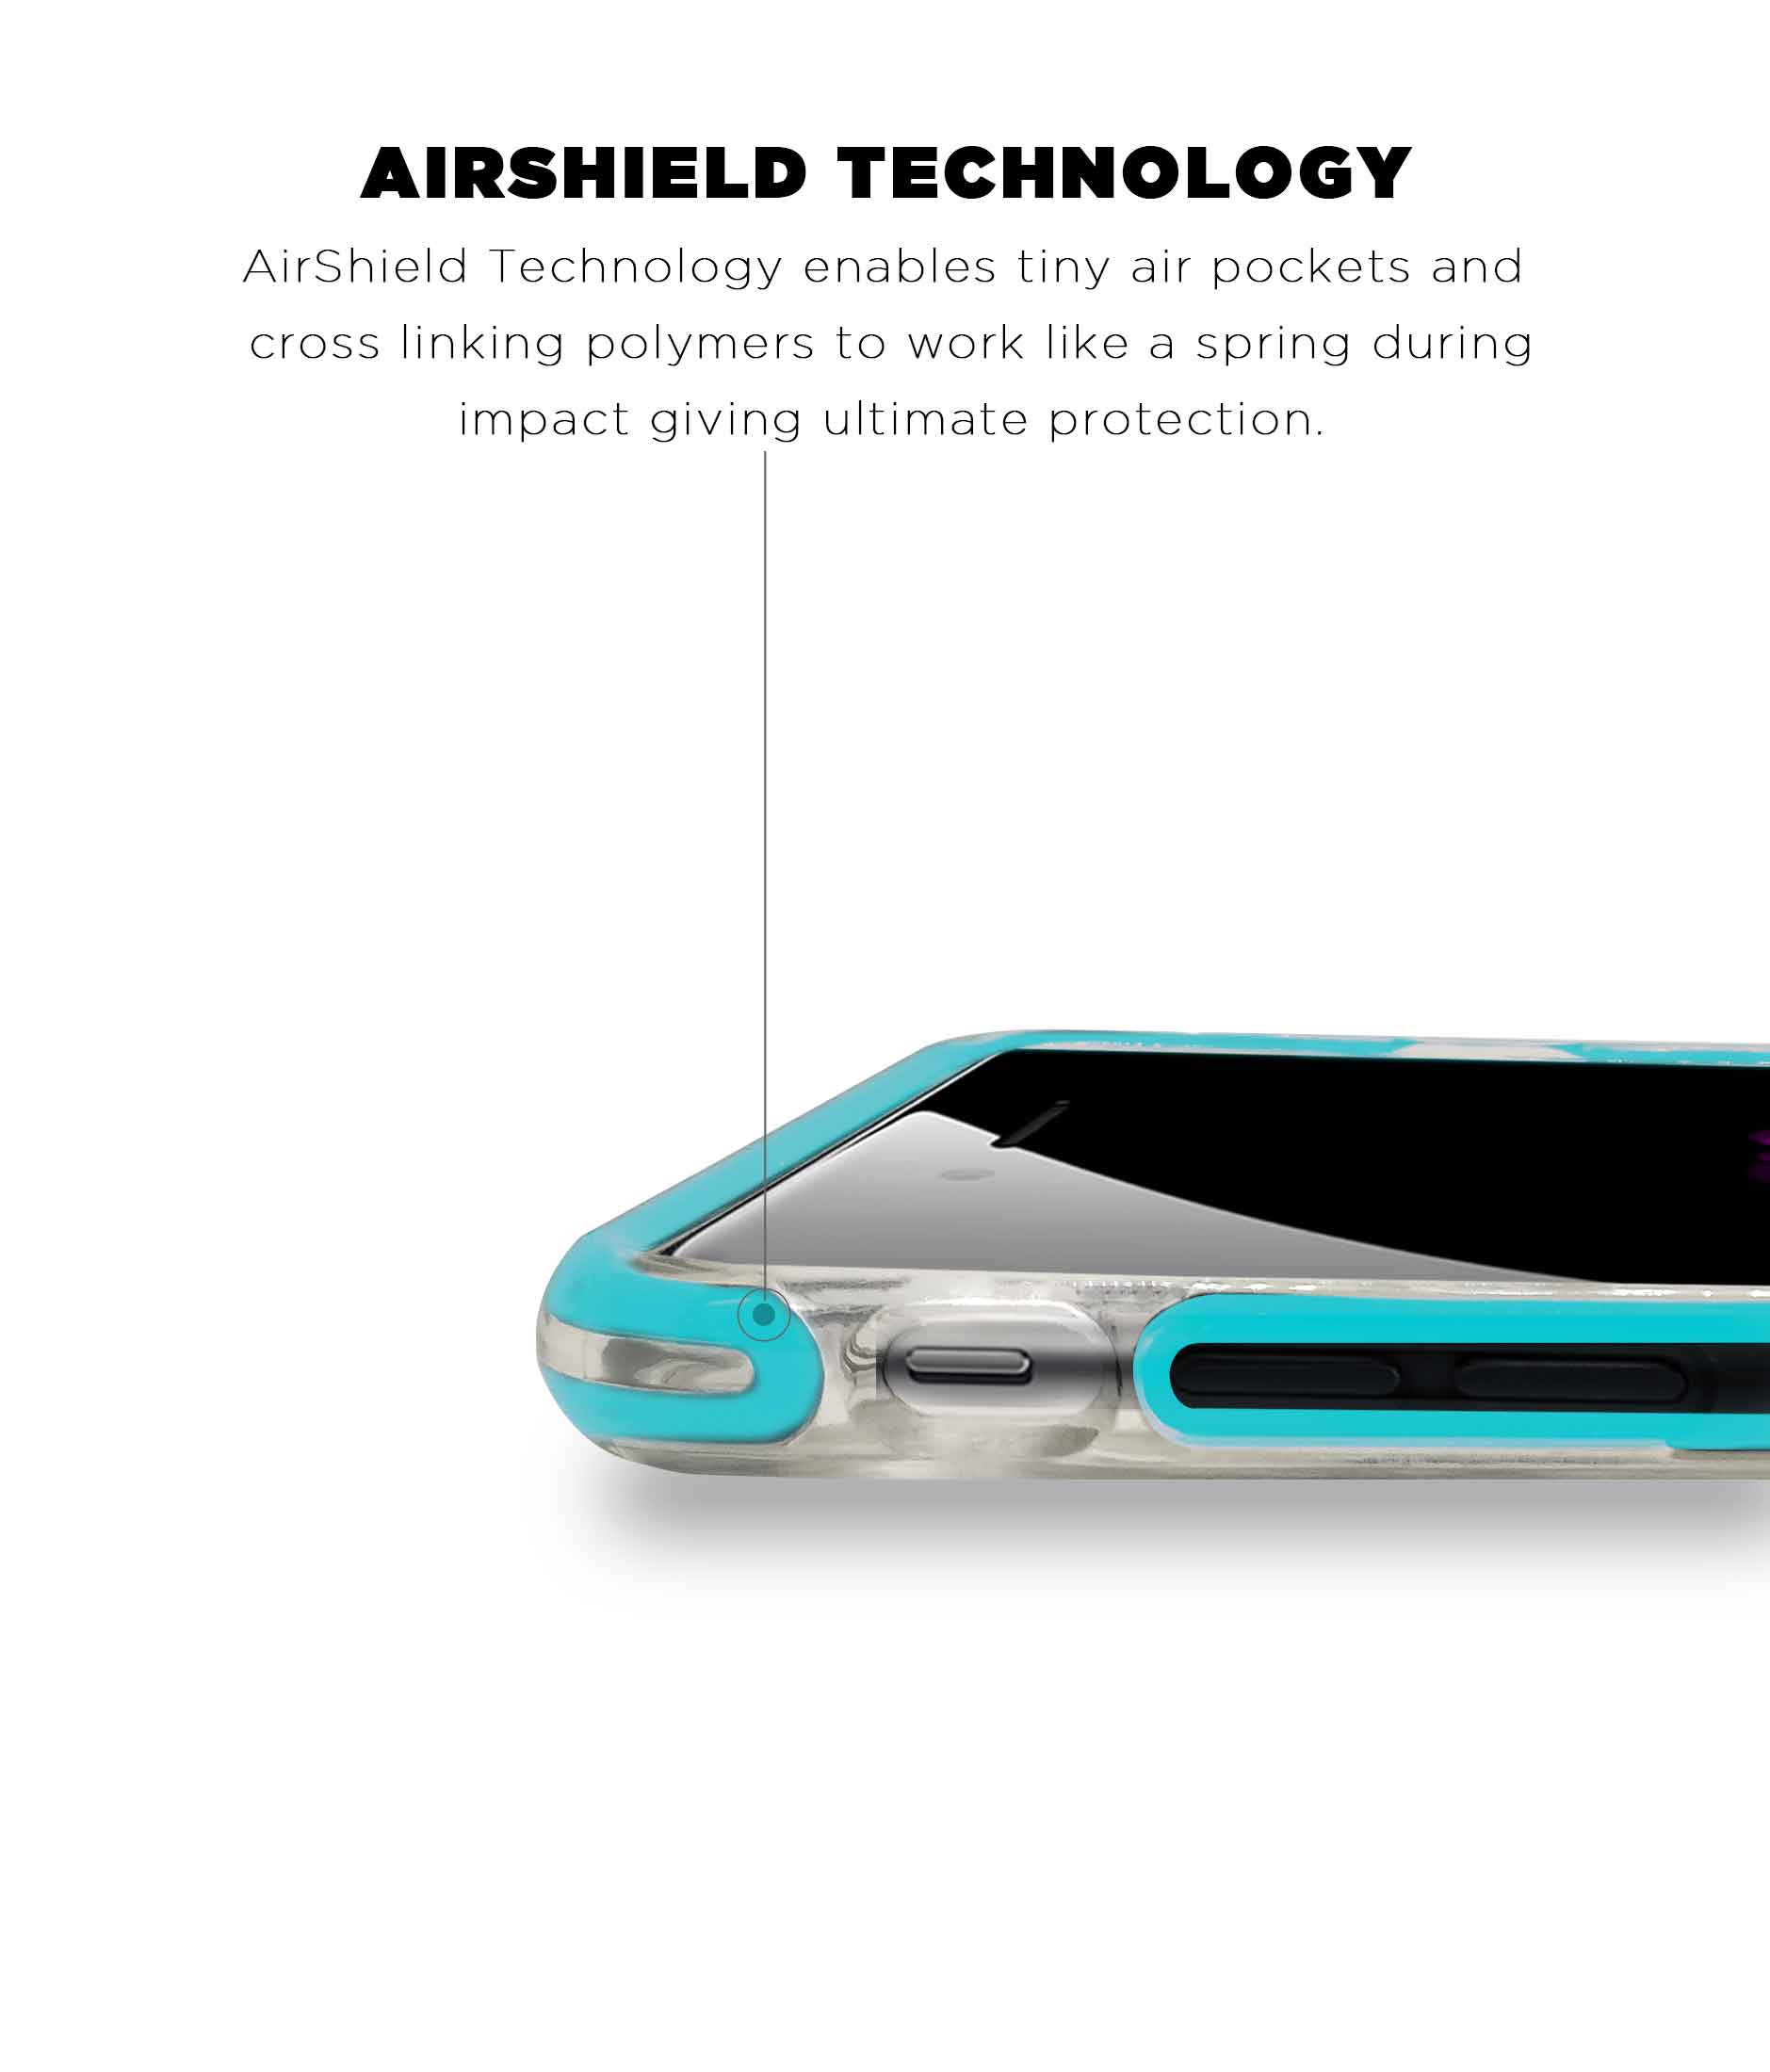 Illuminated Hulk - Extreme Phone Case for iPhone 8